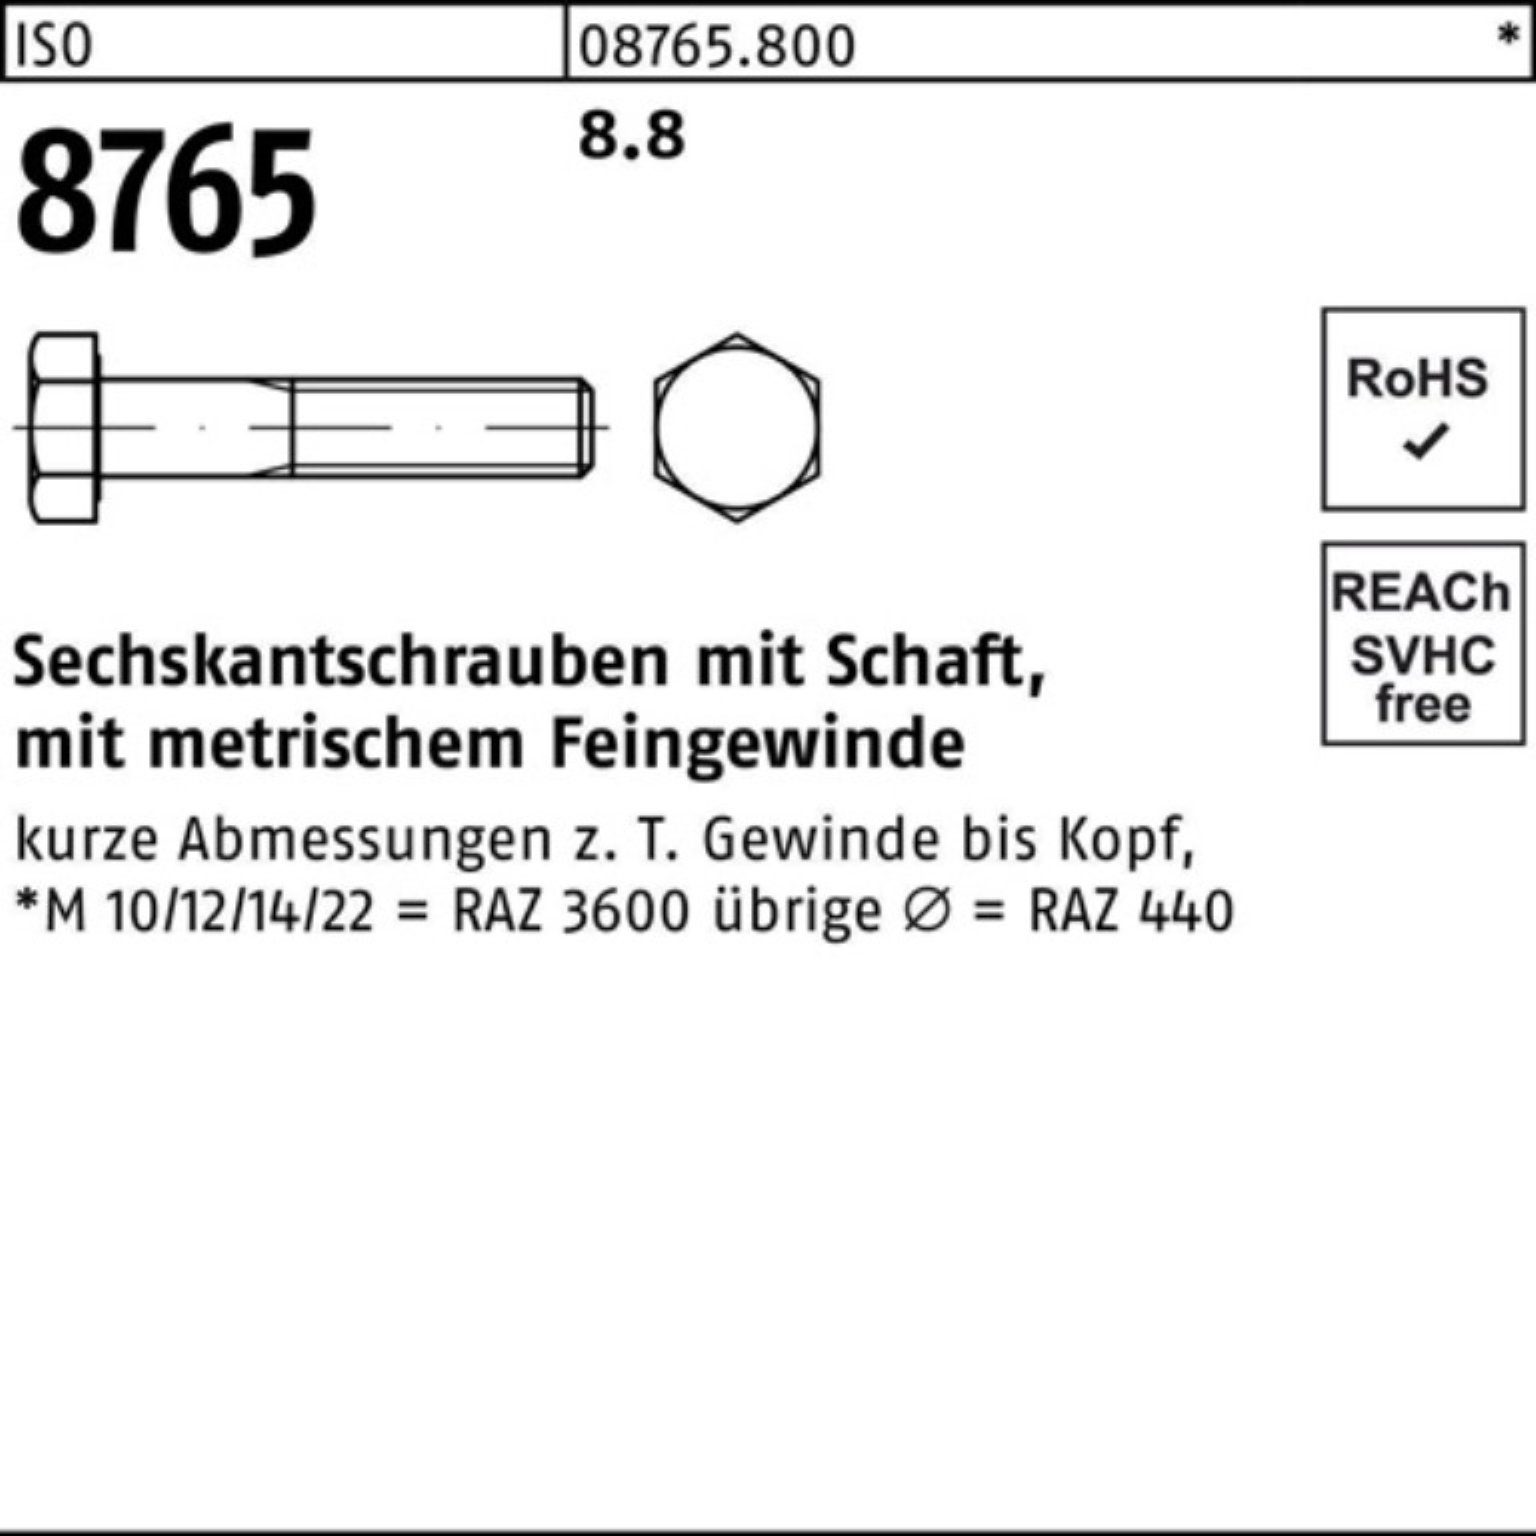 8.8 Sechskantschraube Reyher 8765 Sechskantschraube 100er Stüc ISO Pack Schaft M10x1,25x120 50